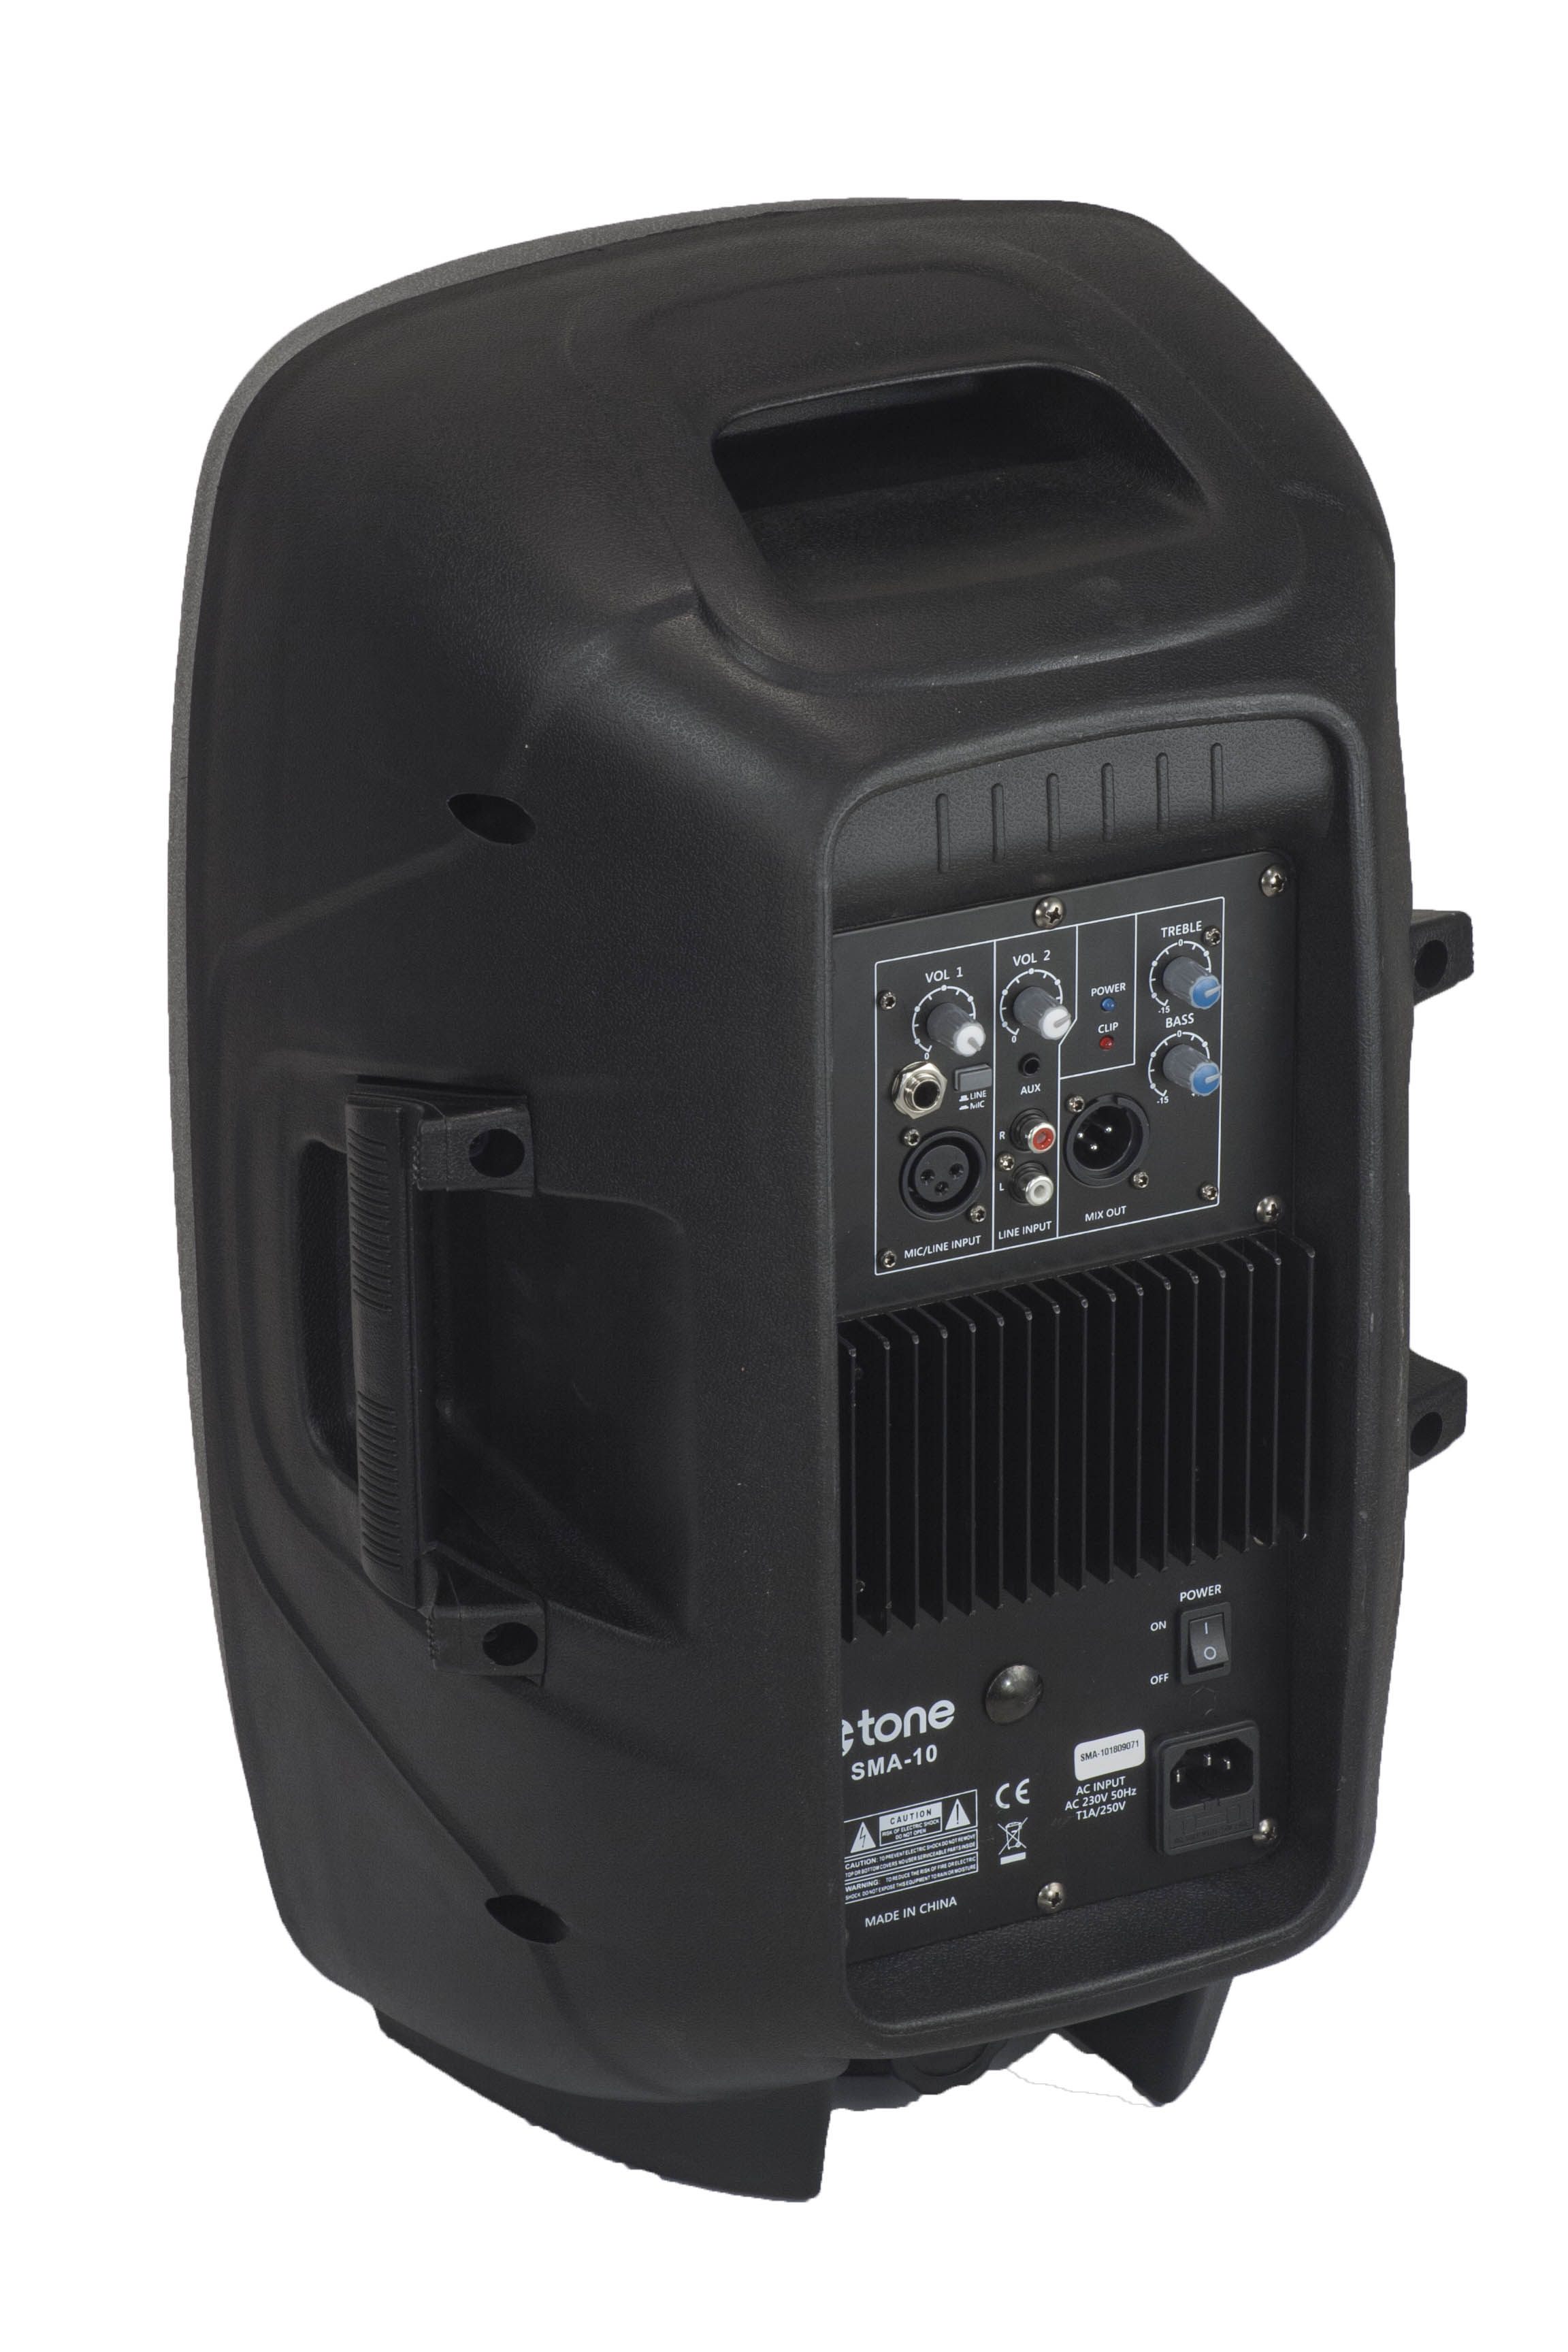 X-tone Sma-15 - Active full-range speaker - Variation 2